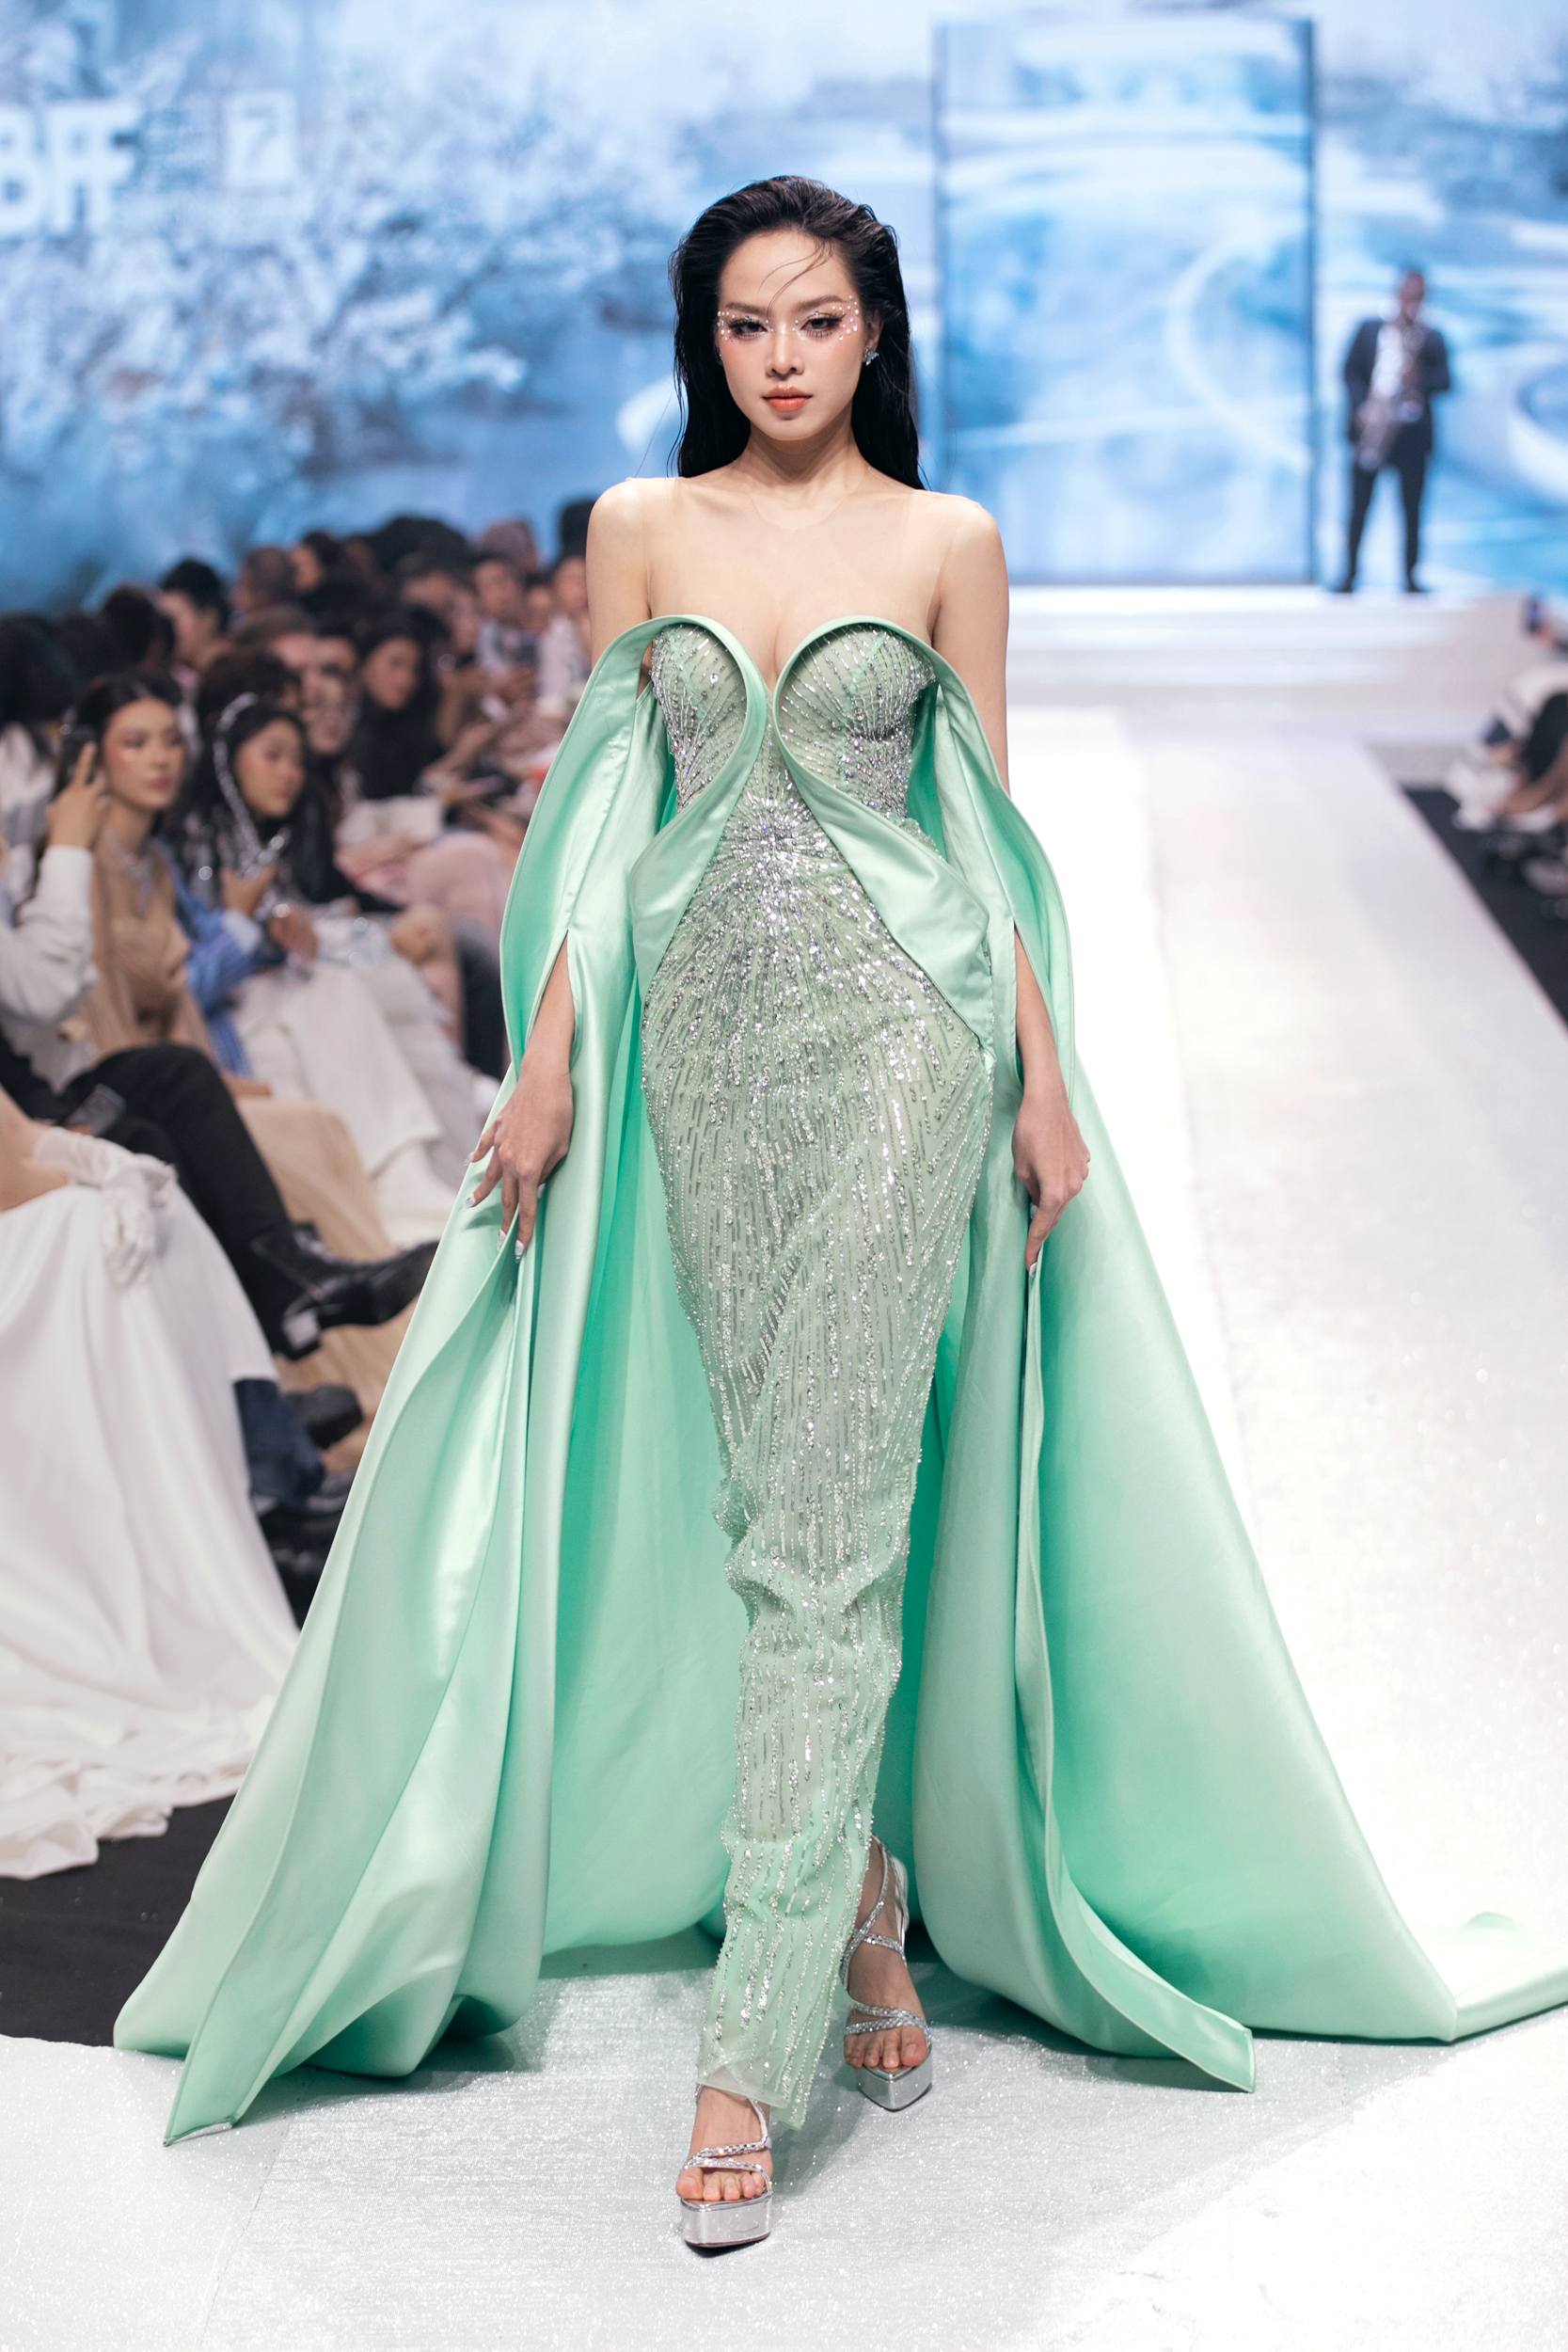 Hoa hậu Bảo Ngọc hóa 'hoa nở trong sương' trong bộ đầm mất 7 ngày đêm để hoàn thành, sử dụng đến 400m vải lưới - Ảnh 2.